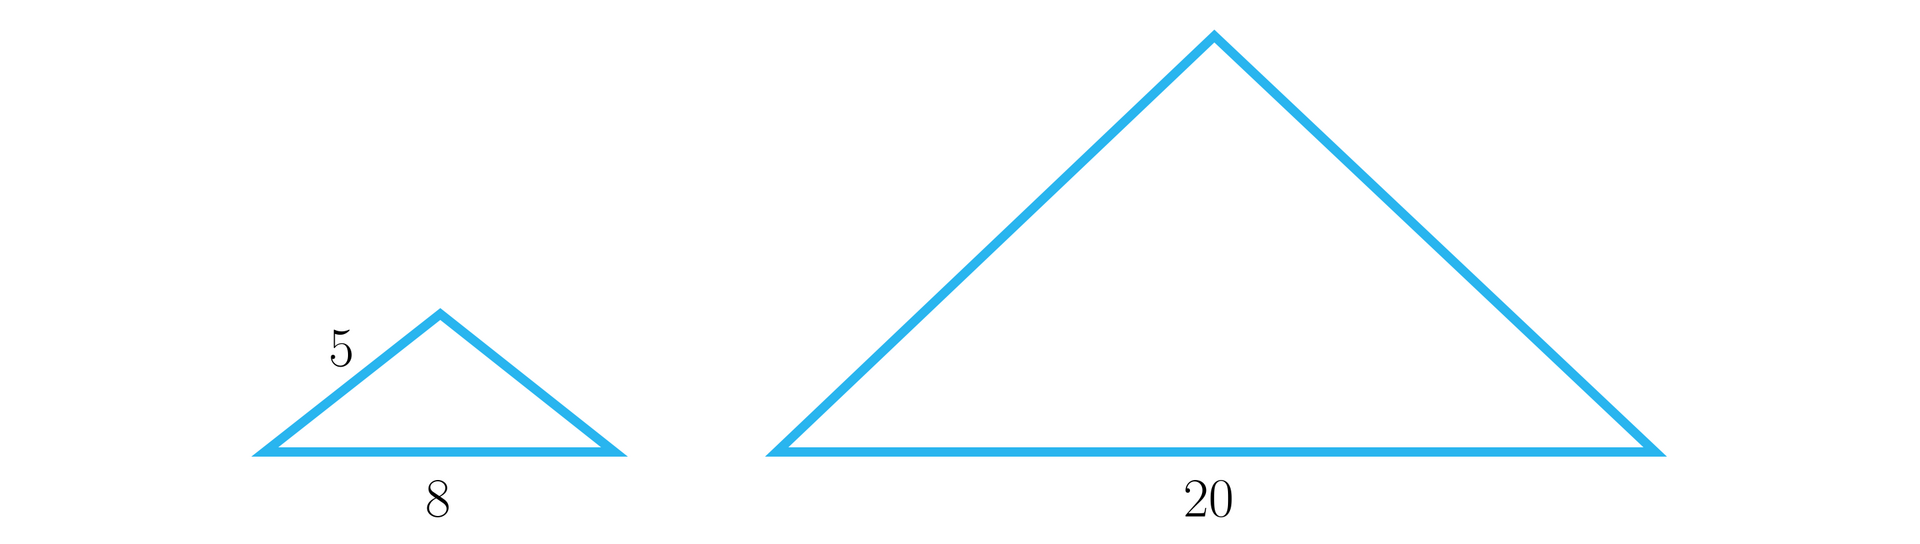 Ilustracja przedstawia dwa trójkąty podobne, które są równoramienne. Trójkąt po lewej stronie jest mniejszy, jego podstawa ma długość 8, a ramiona mają długość 5 każde. Trójkąt po prawej stronie ma podstawę o długości dwadzieścia.